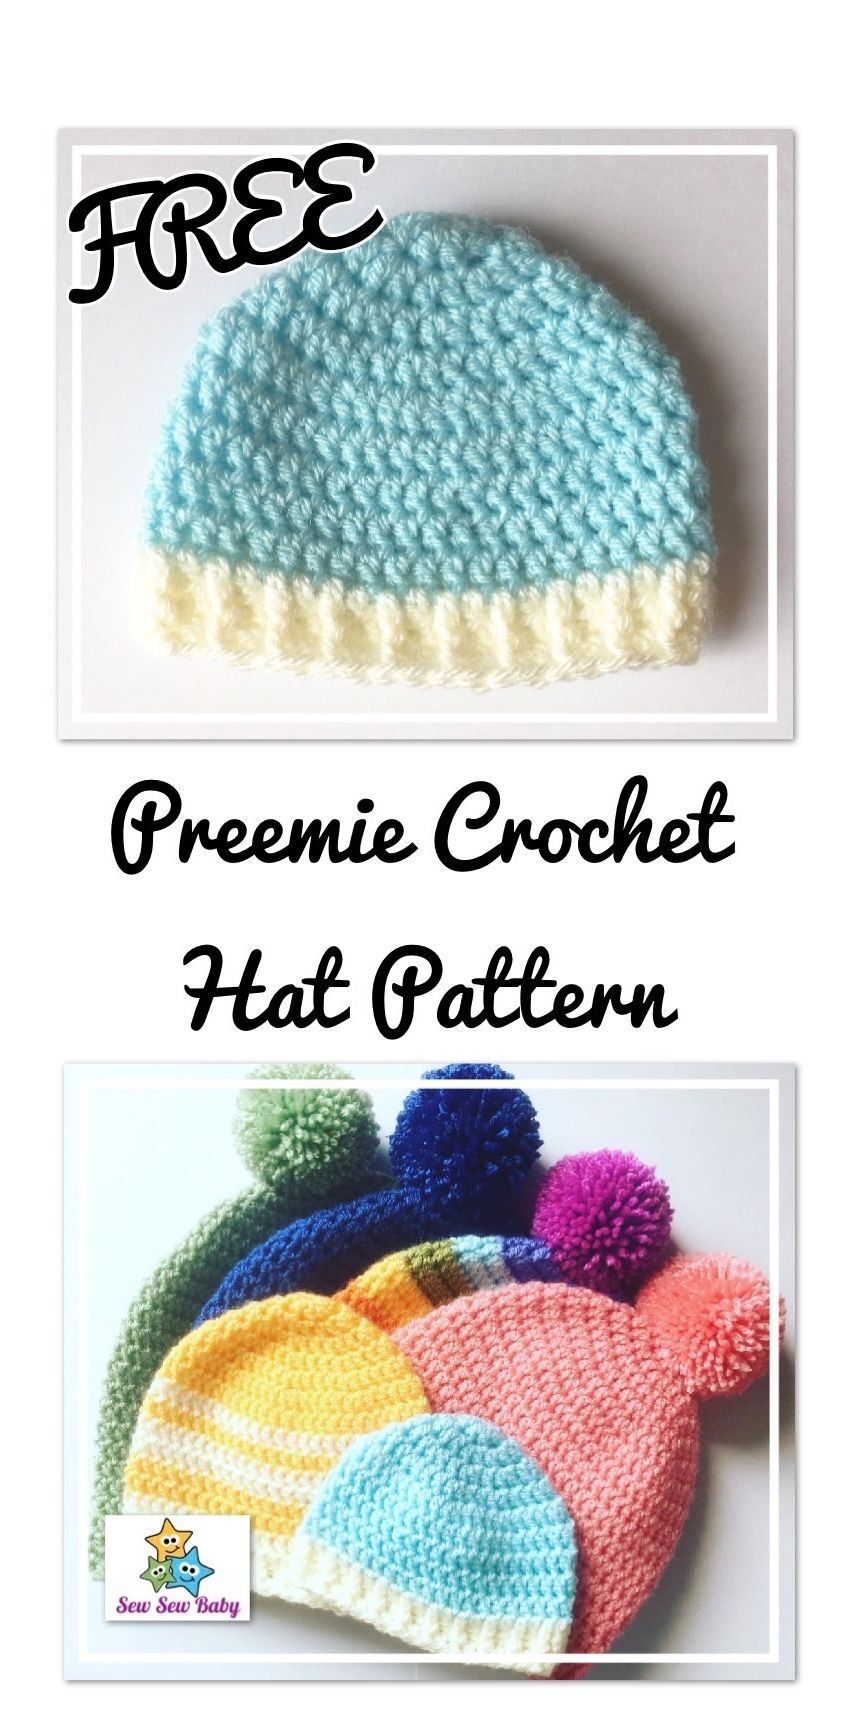 Preemie Crochet Hat Pattern Free Preemie Crochet Hat Pattern Crochet For Ba Children